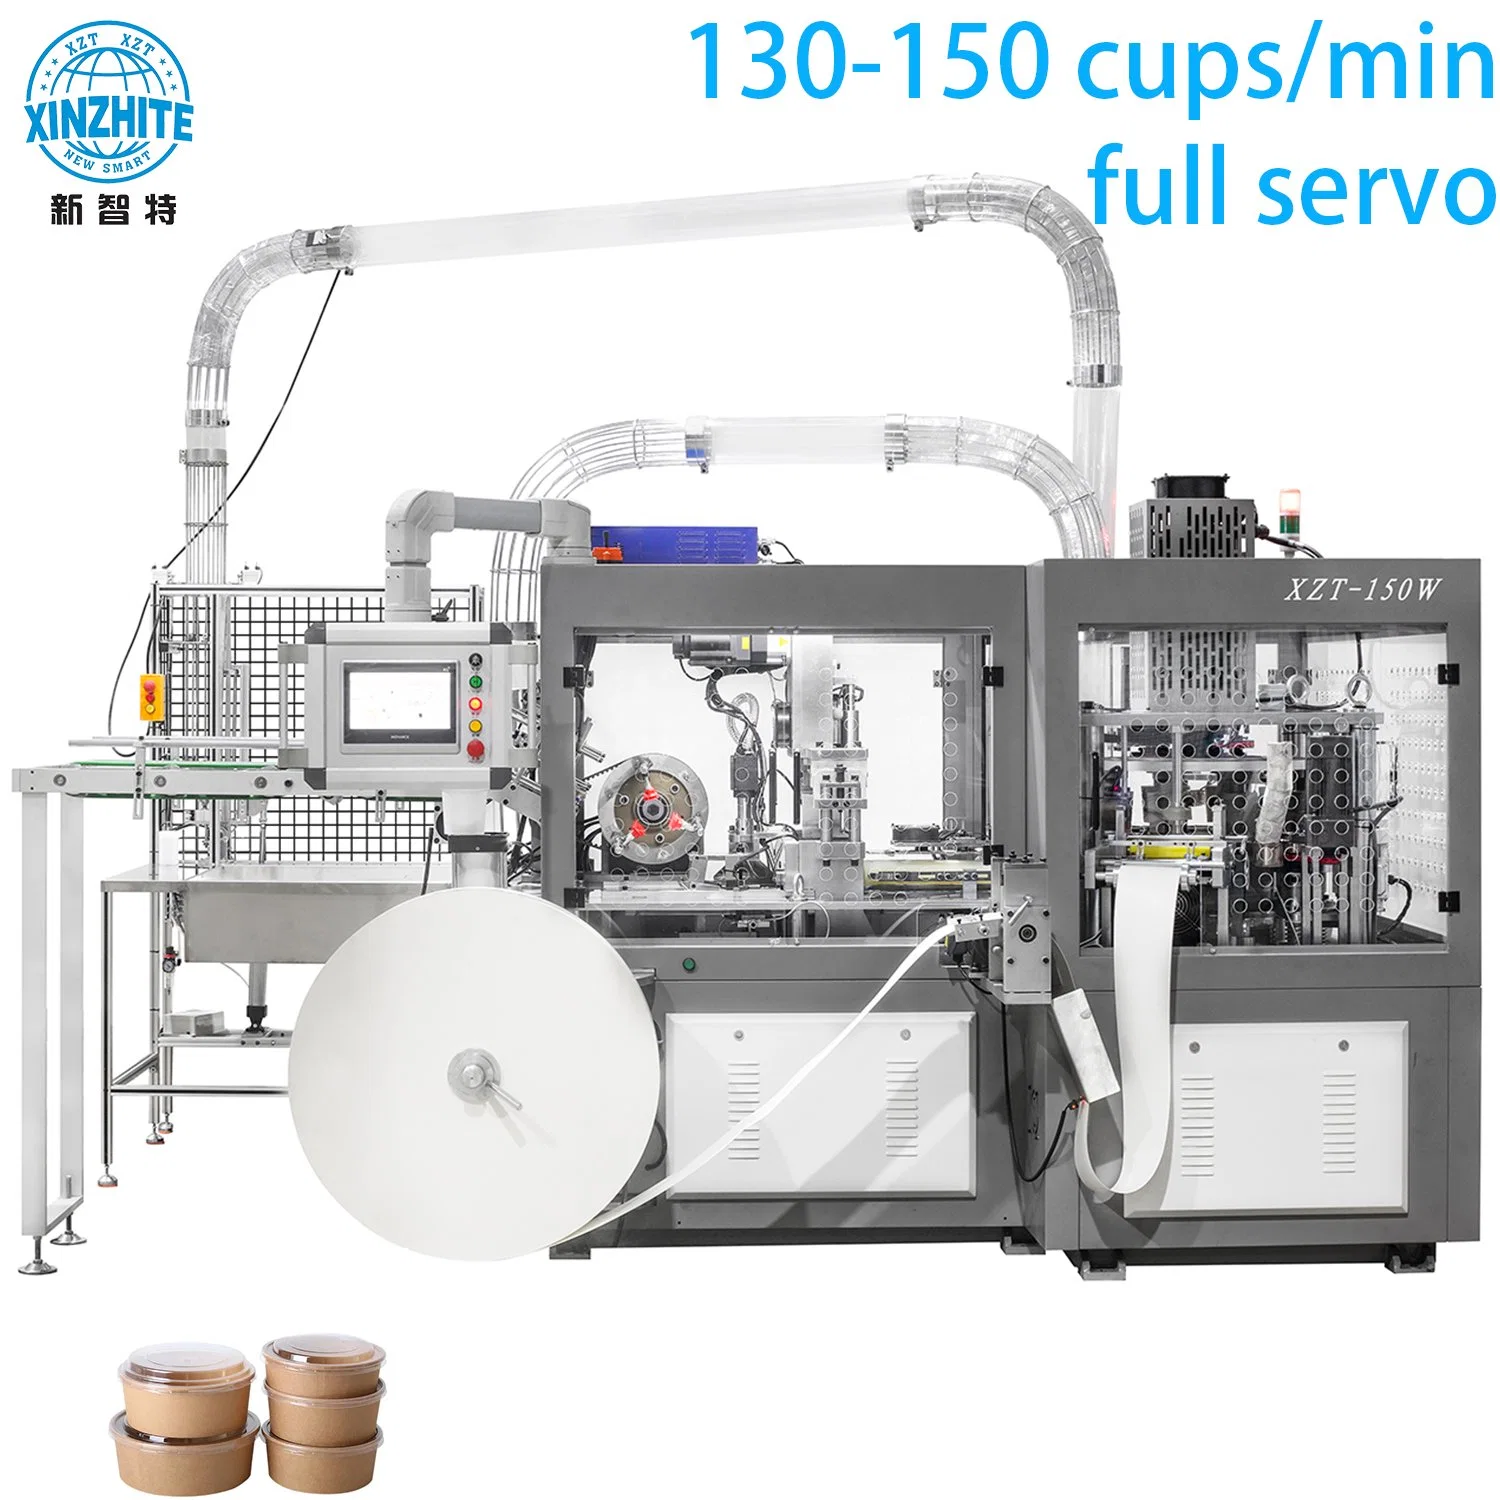 Machine automatique de fabrication de gobelets en papier jetables, bols, boîtes et sacs à partir de papier ultrasonique jetable pour café